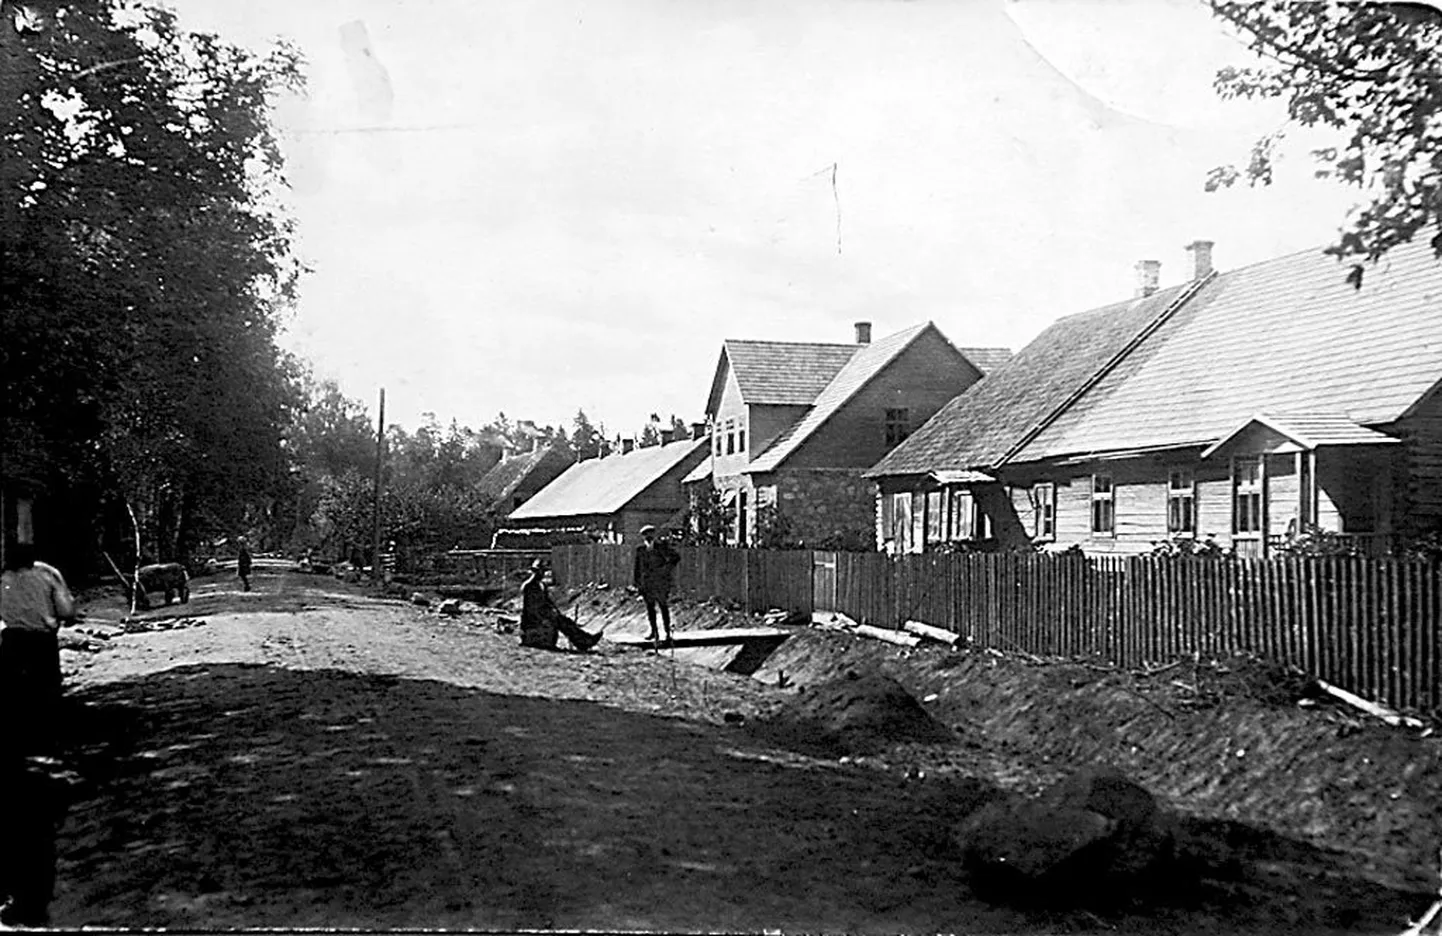 Pildi paremas nurgas on kõrtsituba, kuhu asutatud koolis töötas aastatel 1848–1850 Johann Voldemar Jannsen ja kus tema tütar Lydia alustas õpinguid.